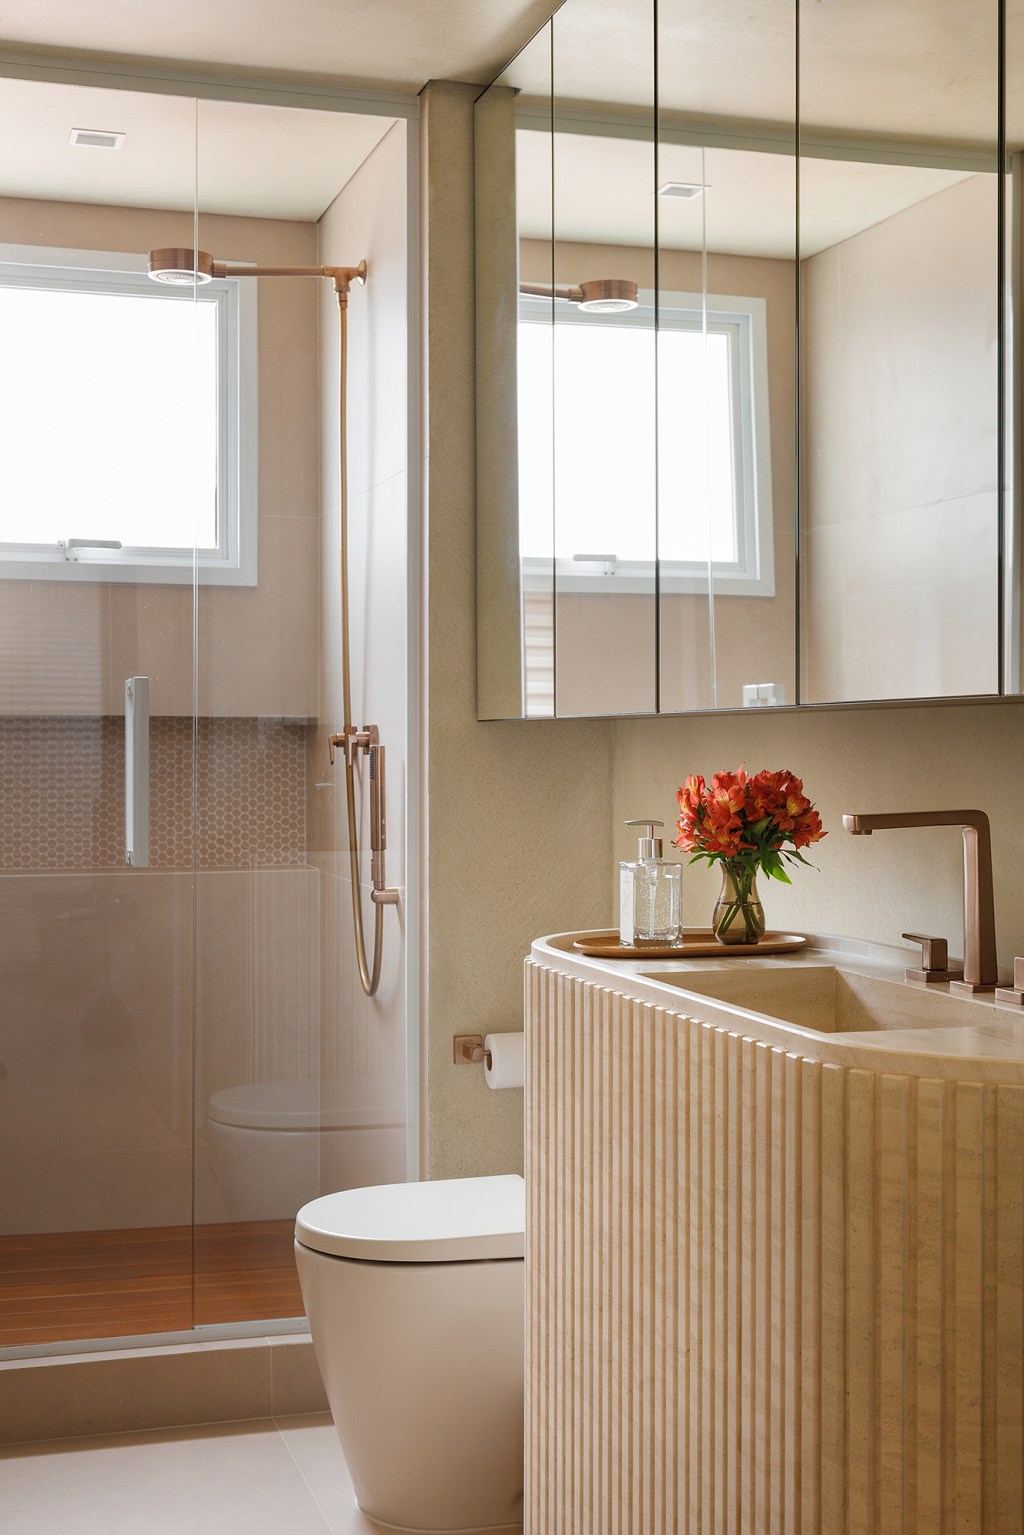 Apê 130 m2 ar mediterrâneo formas orgânicas Gustavo Marasca banheiro espelho box torneira